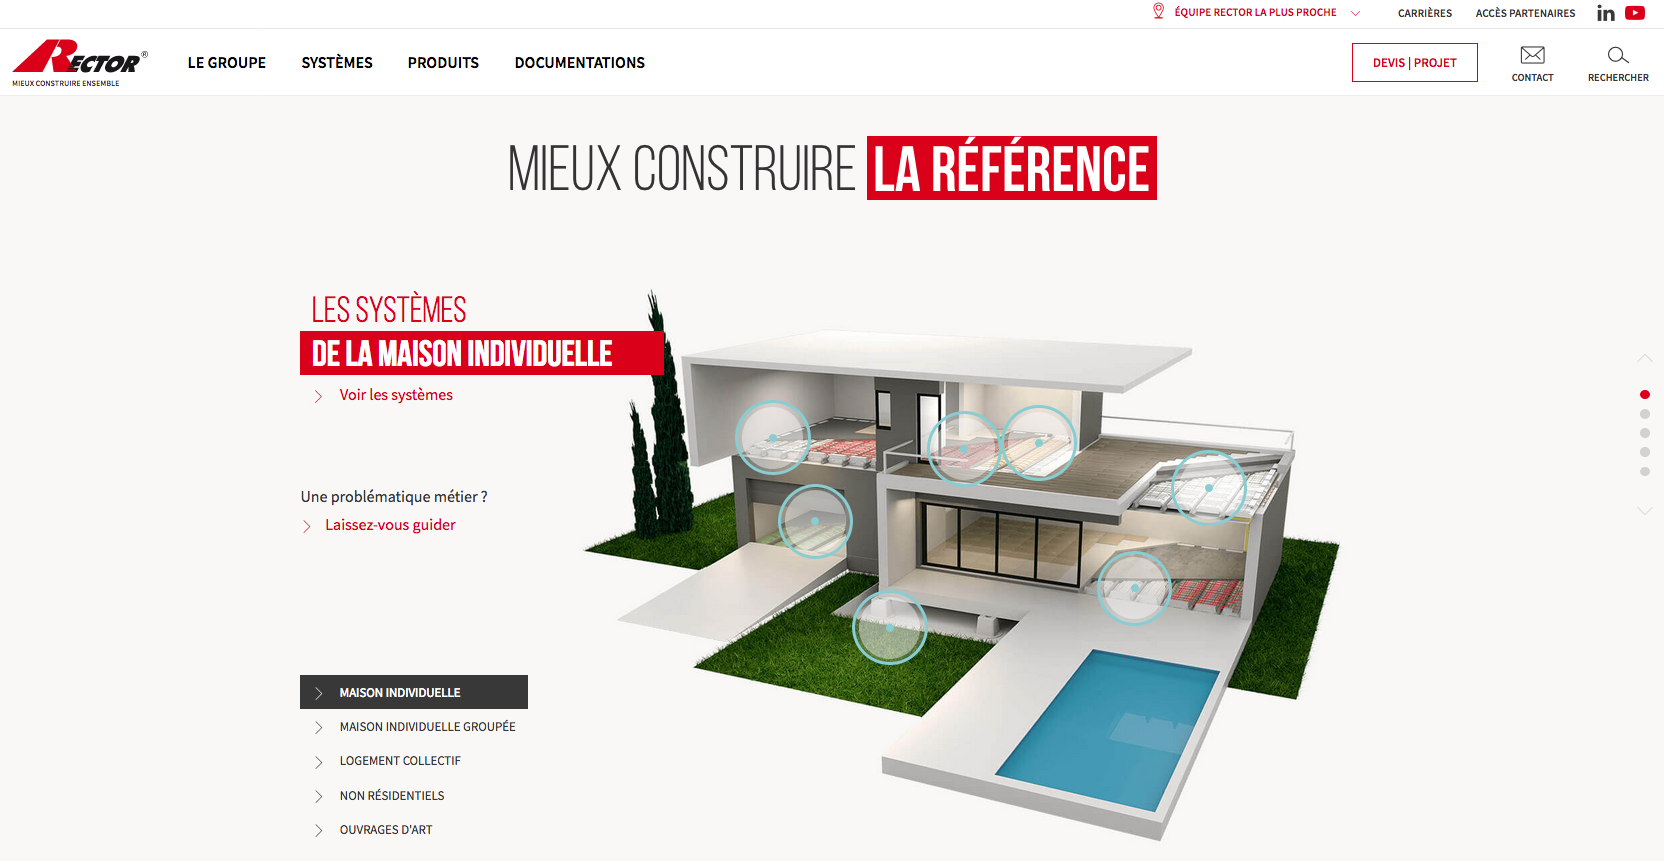 Nouveau site internet www.rector.fr : un portail de référence au cœur de l'écosystème digital Rector